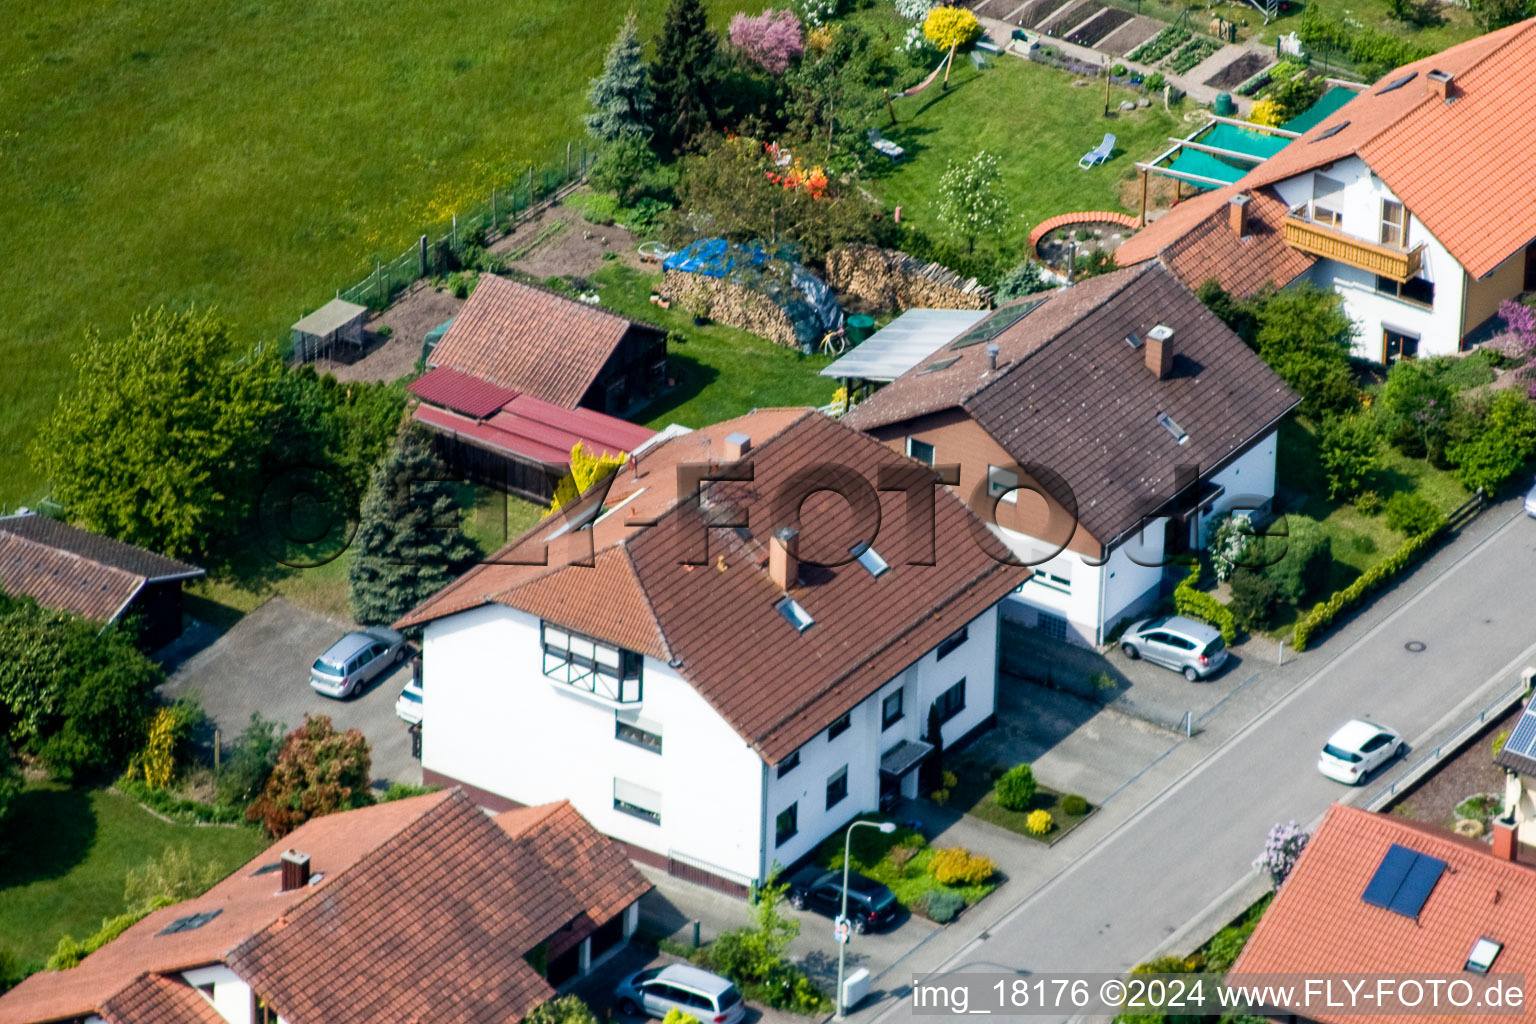 Berg im Bundesland Rheinland-Pfalz, Deutschland von der Drohne aus gesehen